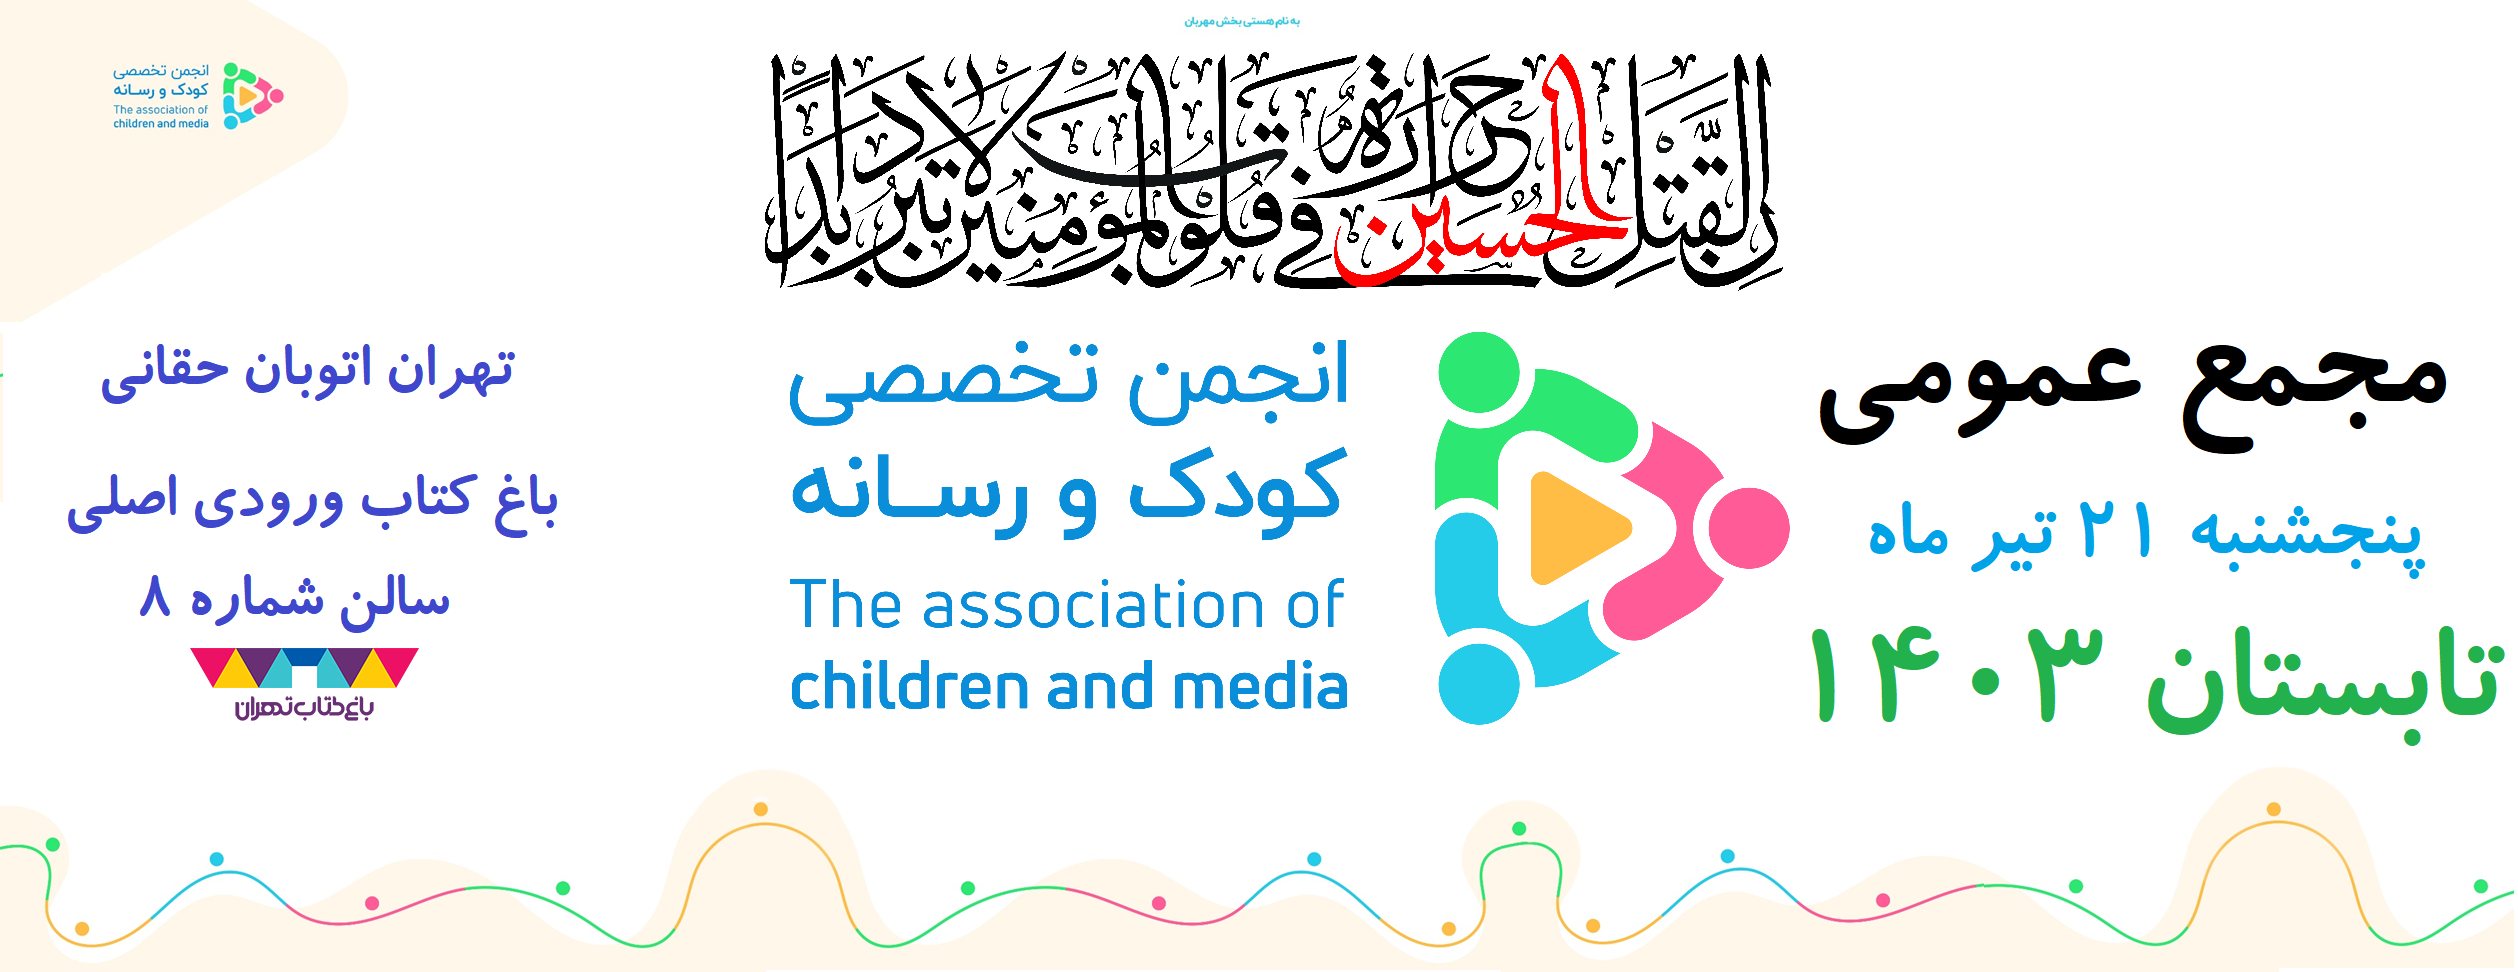 فراخوان بیست و چهارمین نشست مجمع عادی انجمن تخصصی کودک و رسانه